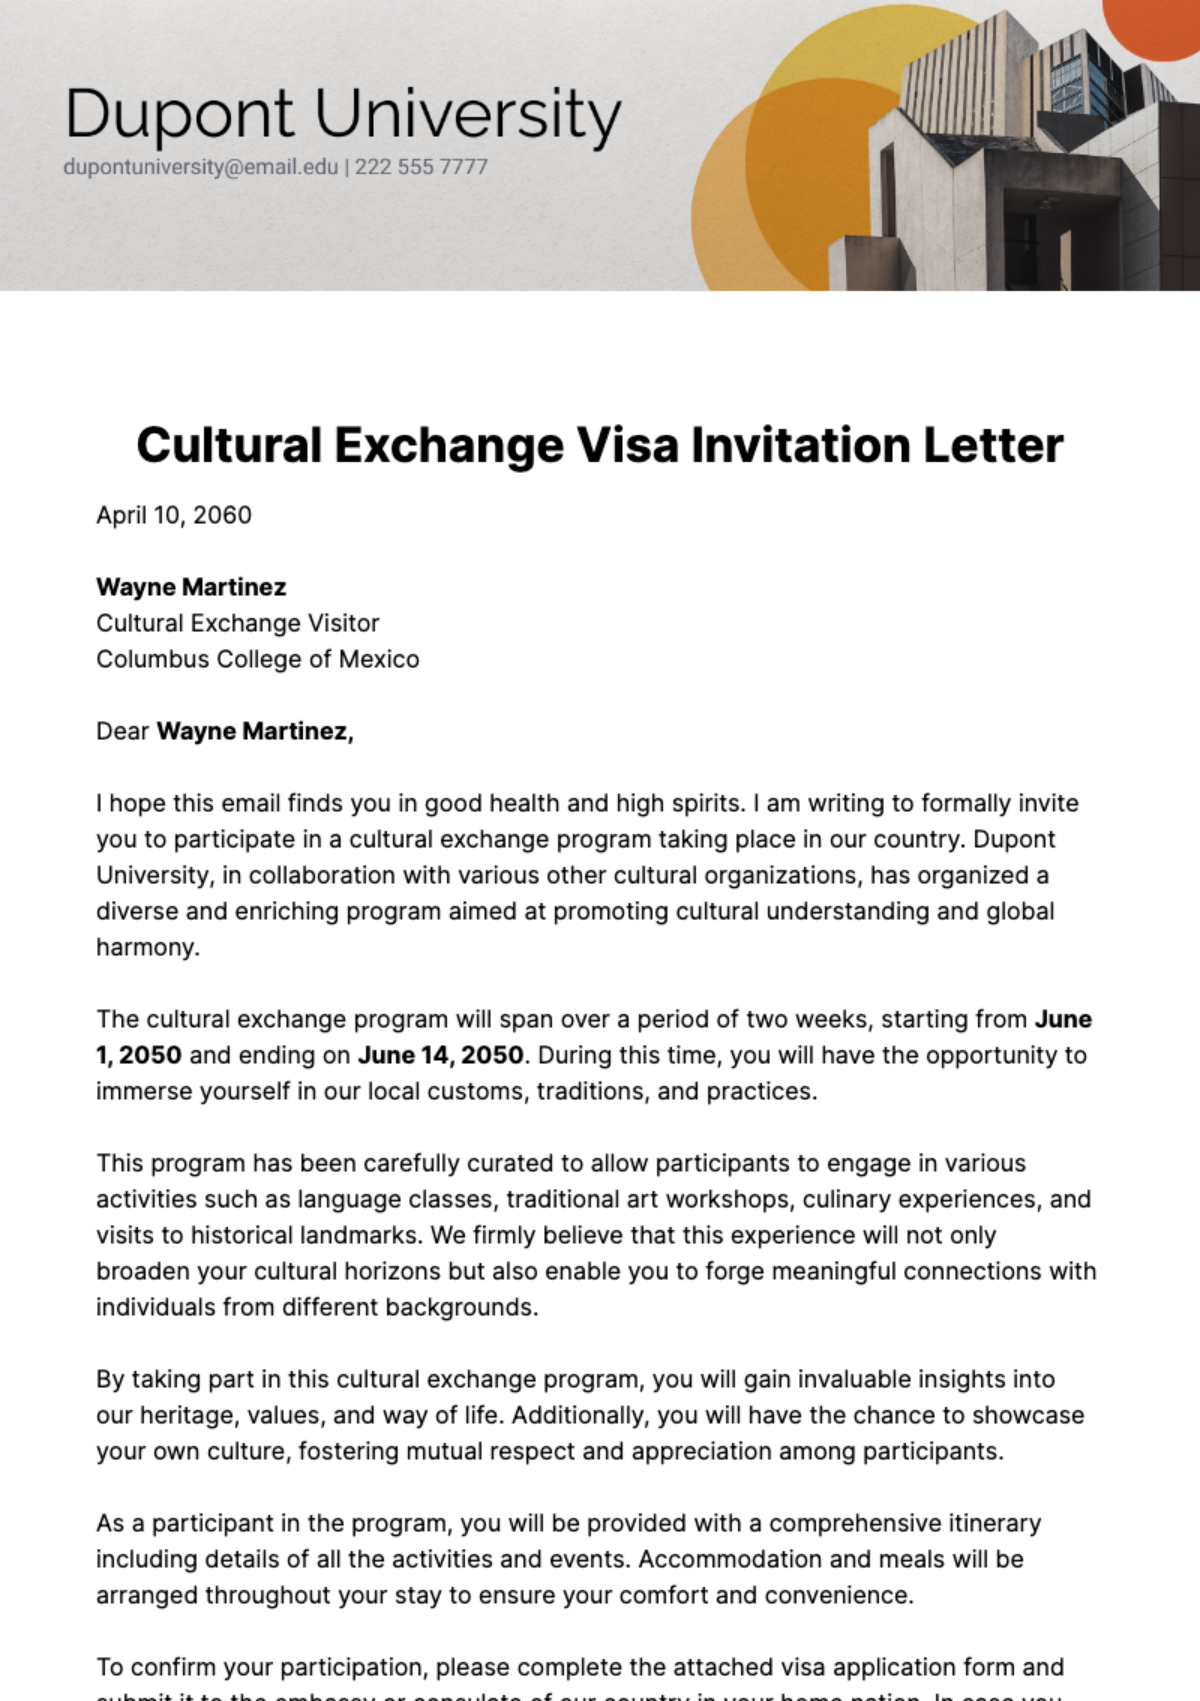 Cultural Exchange Visa Invitation Letter Template